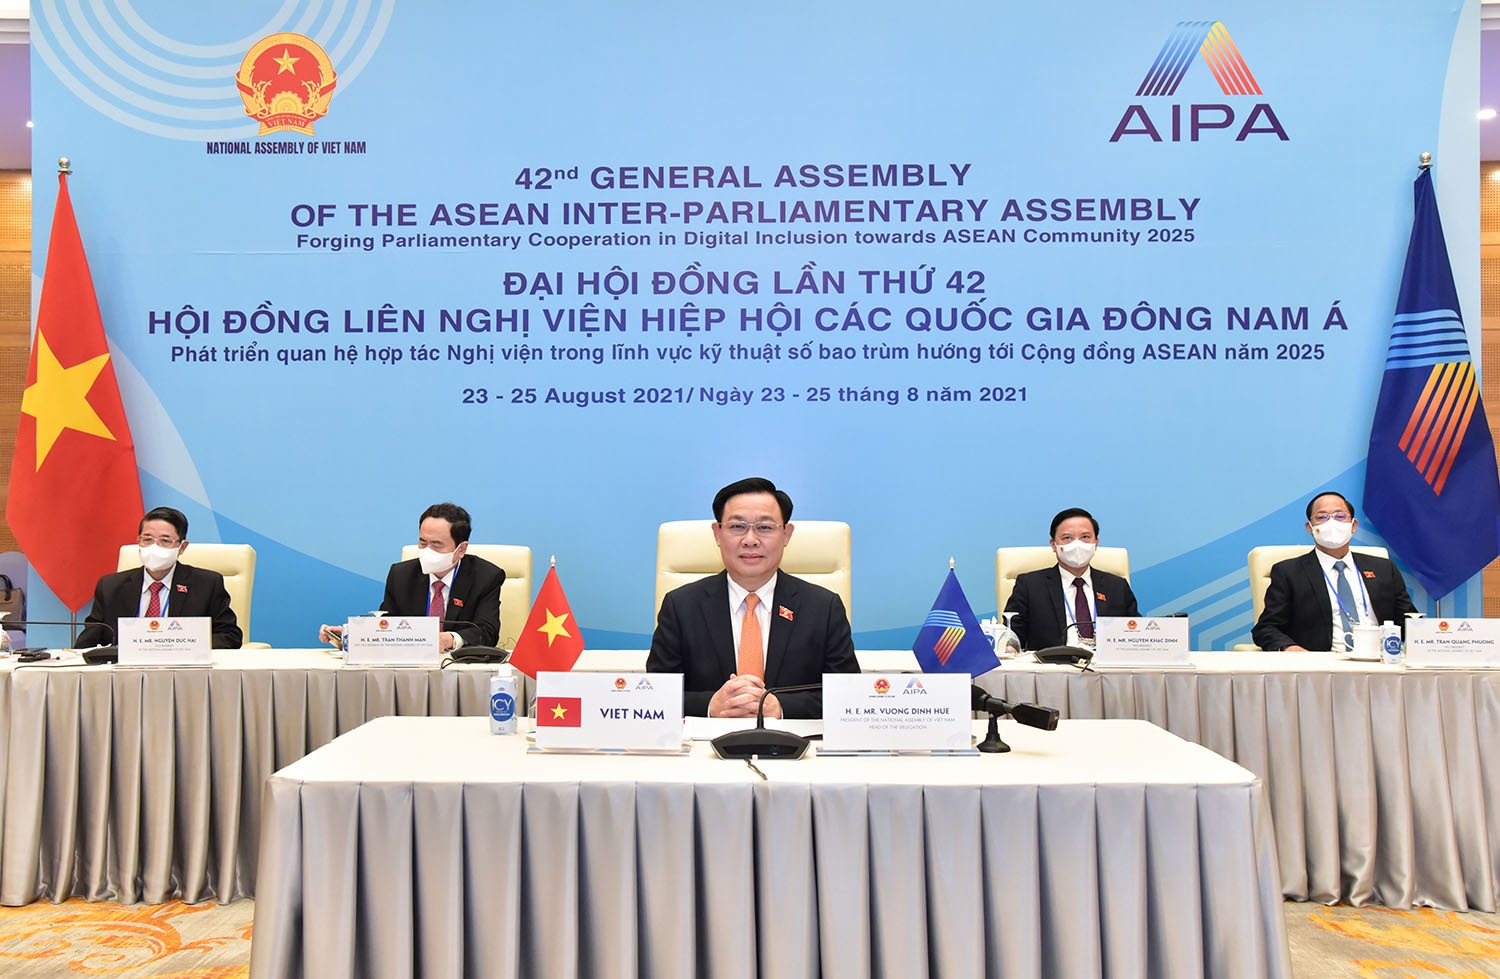 Chiều 23/8, Chủ tịch Quốc hội Việt Nam Vương Đình Huệ, Trưởng đoàn Đại biểu Quốc hội Việt Nam có bài phát biểu tại Đại hội đồng AIPA-42 theo hình thức họp trực tuyến.